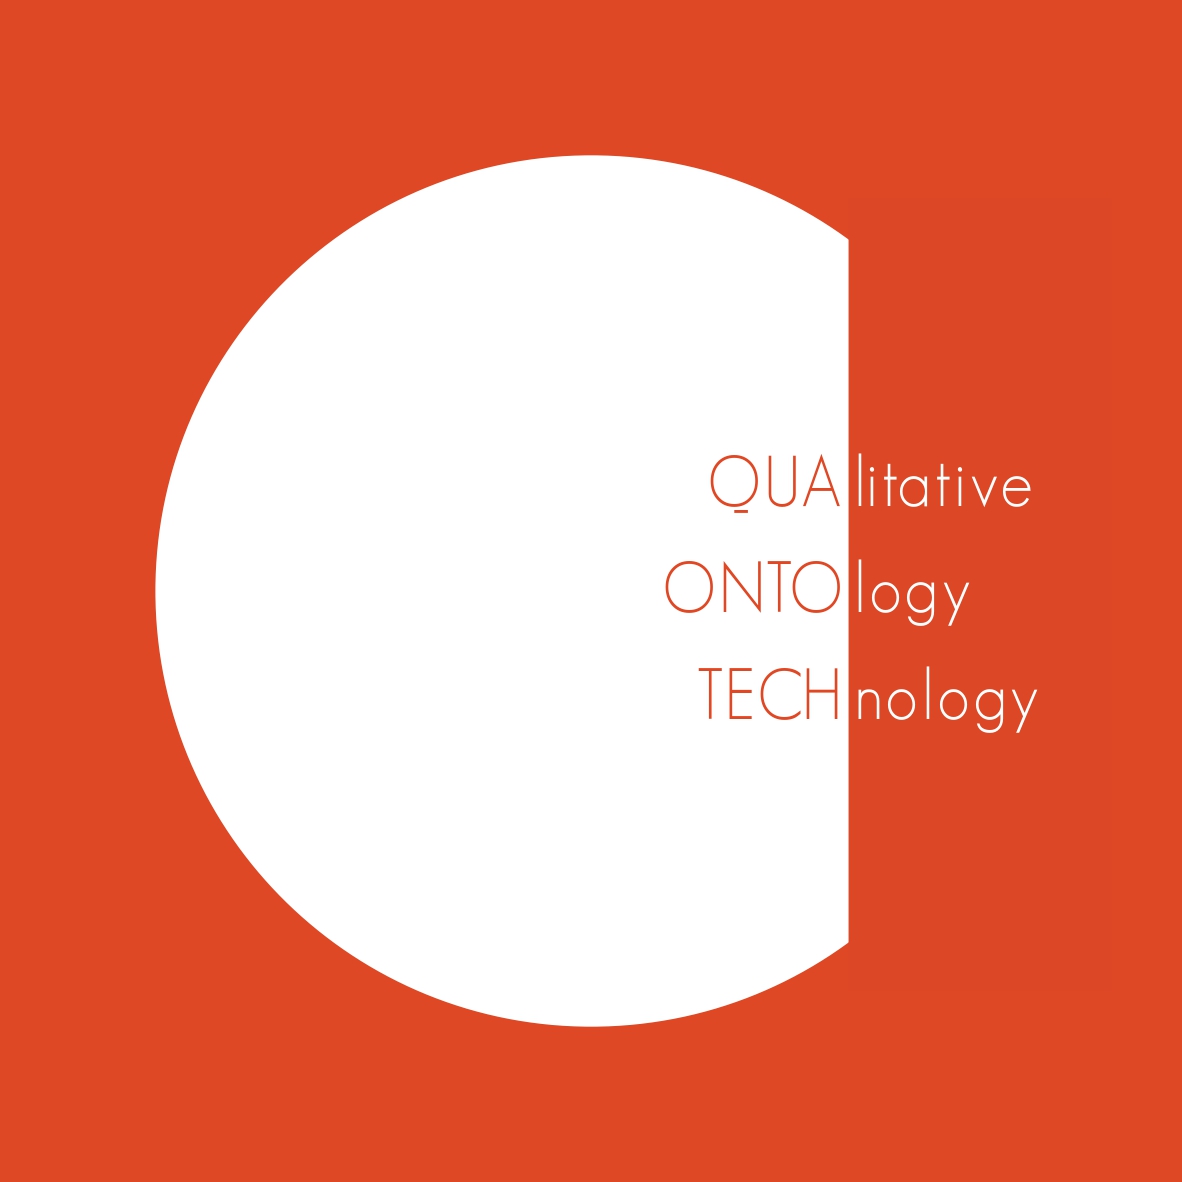 Qua_Onto_Tech